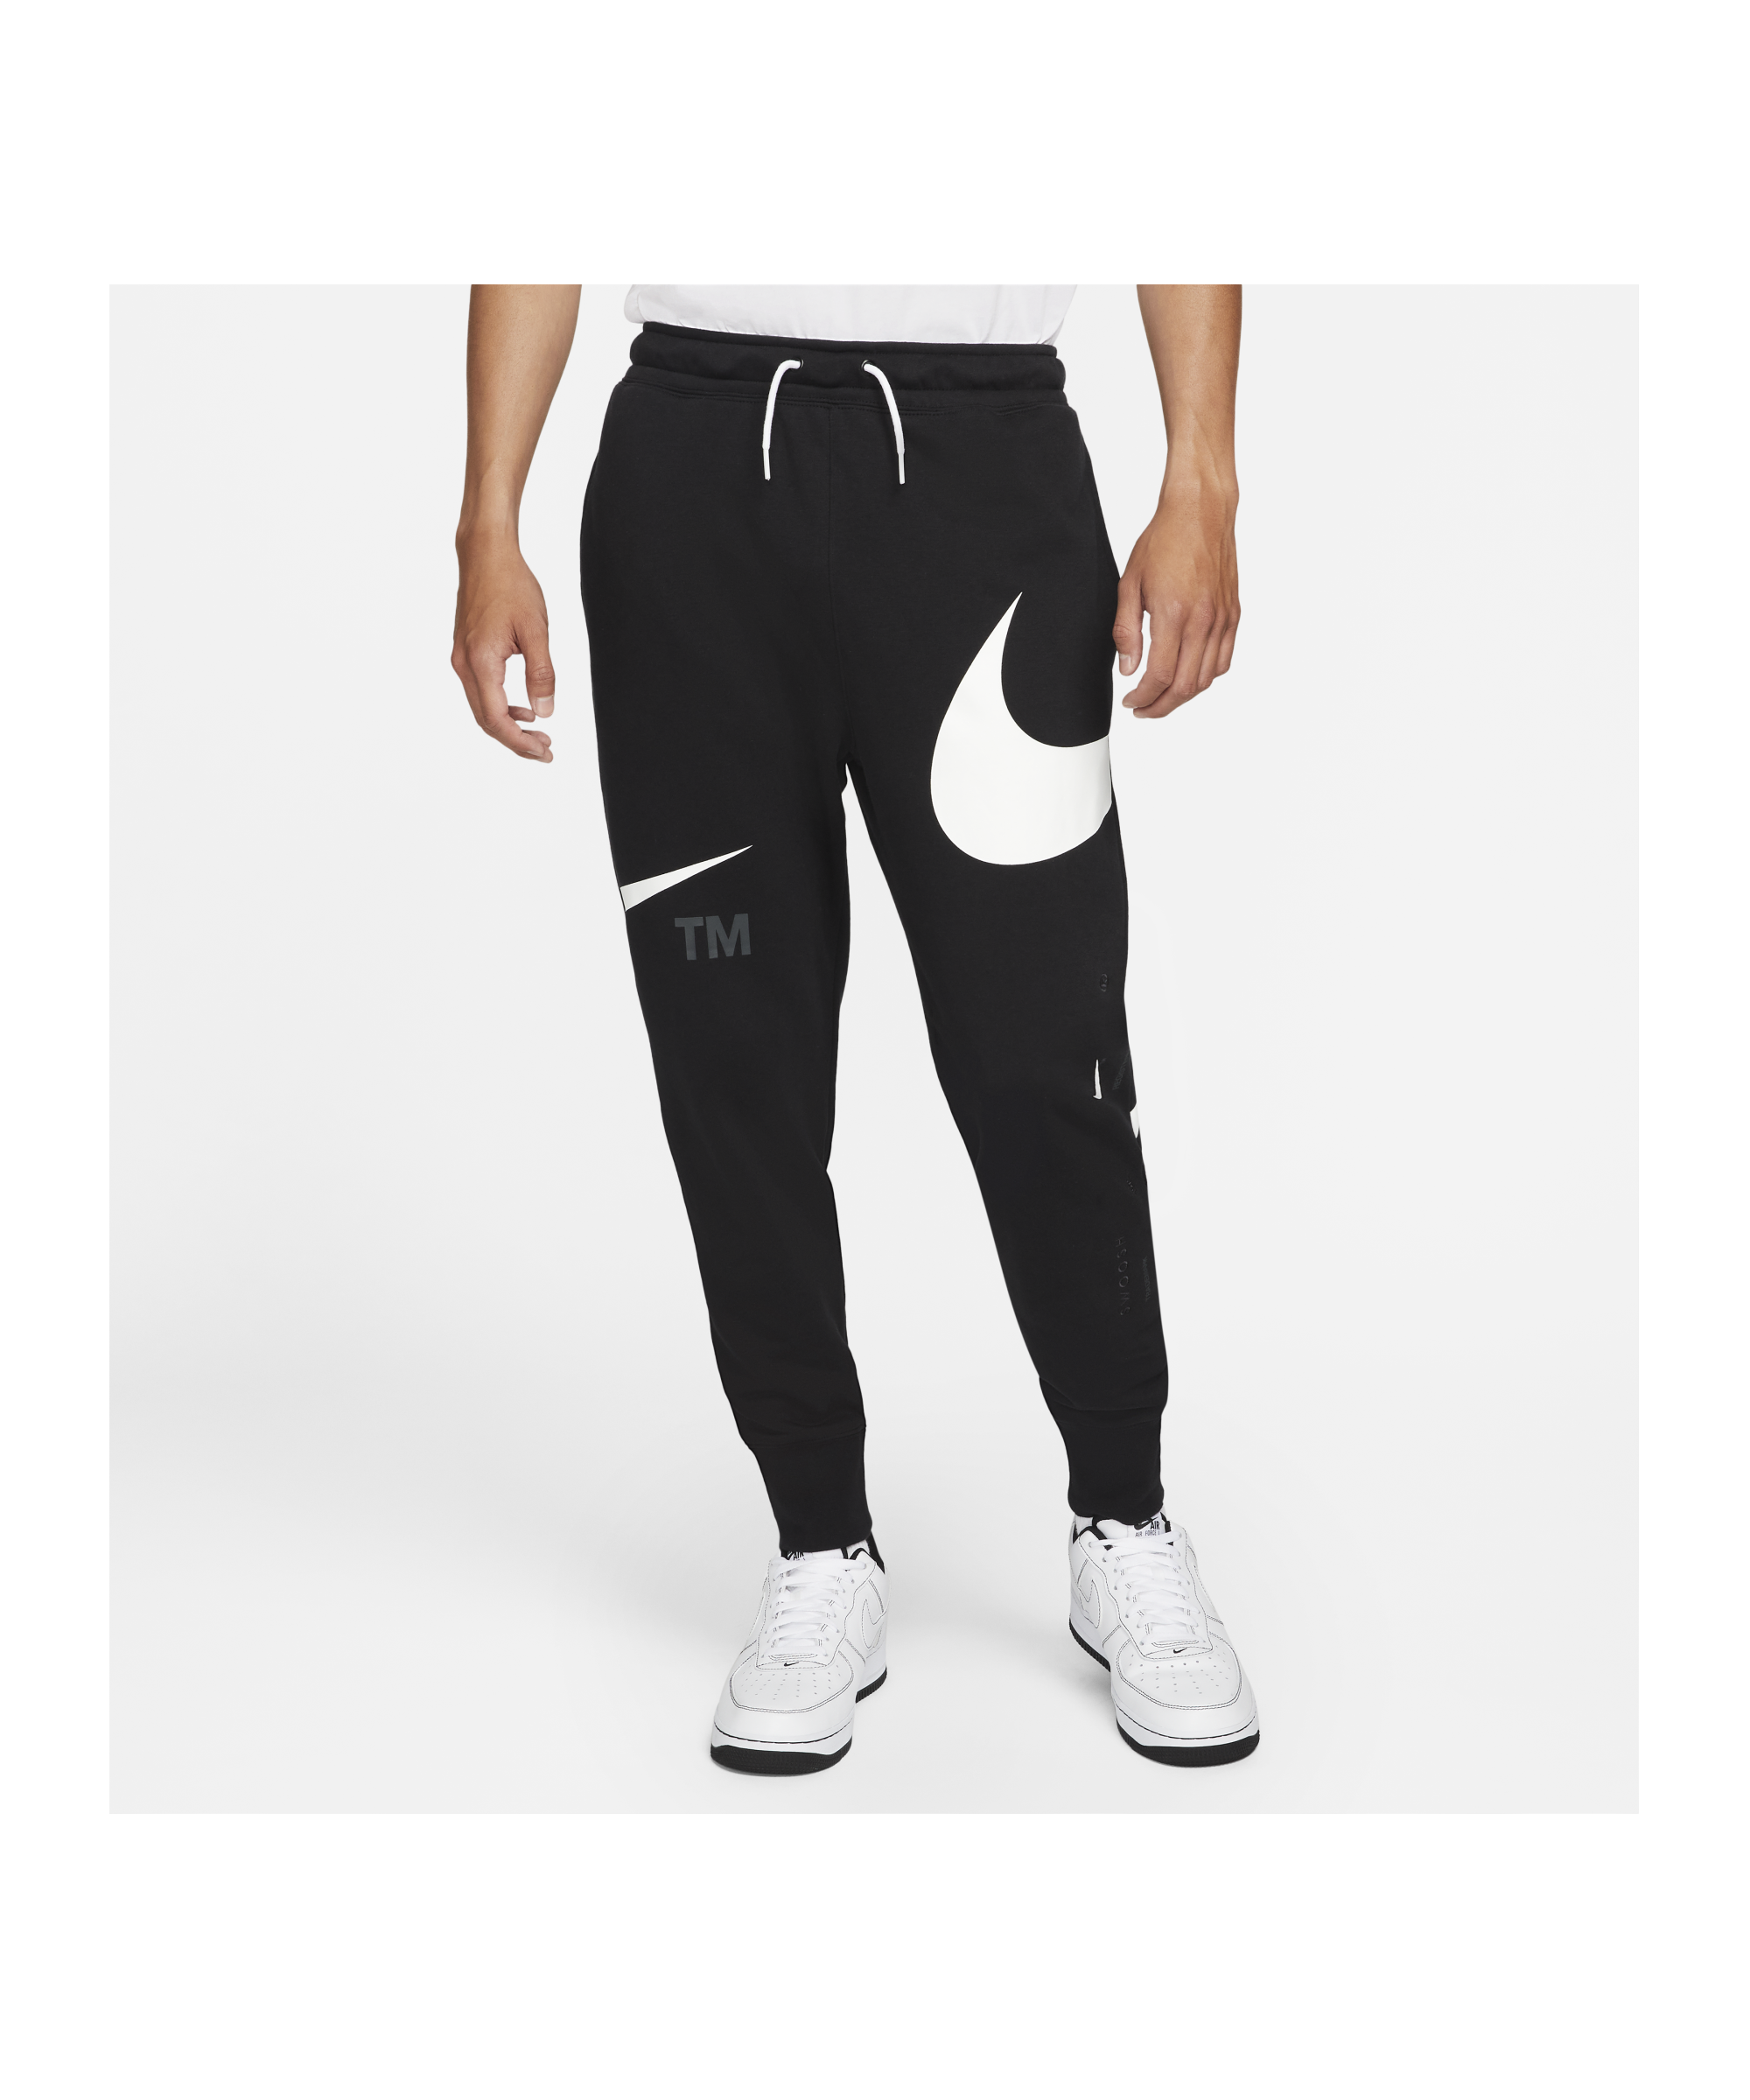 Haan China Zullen Nike Sport Swoosh Pants - Black